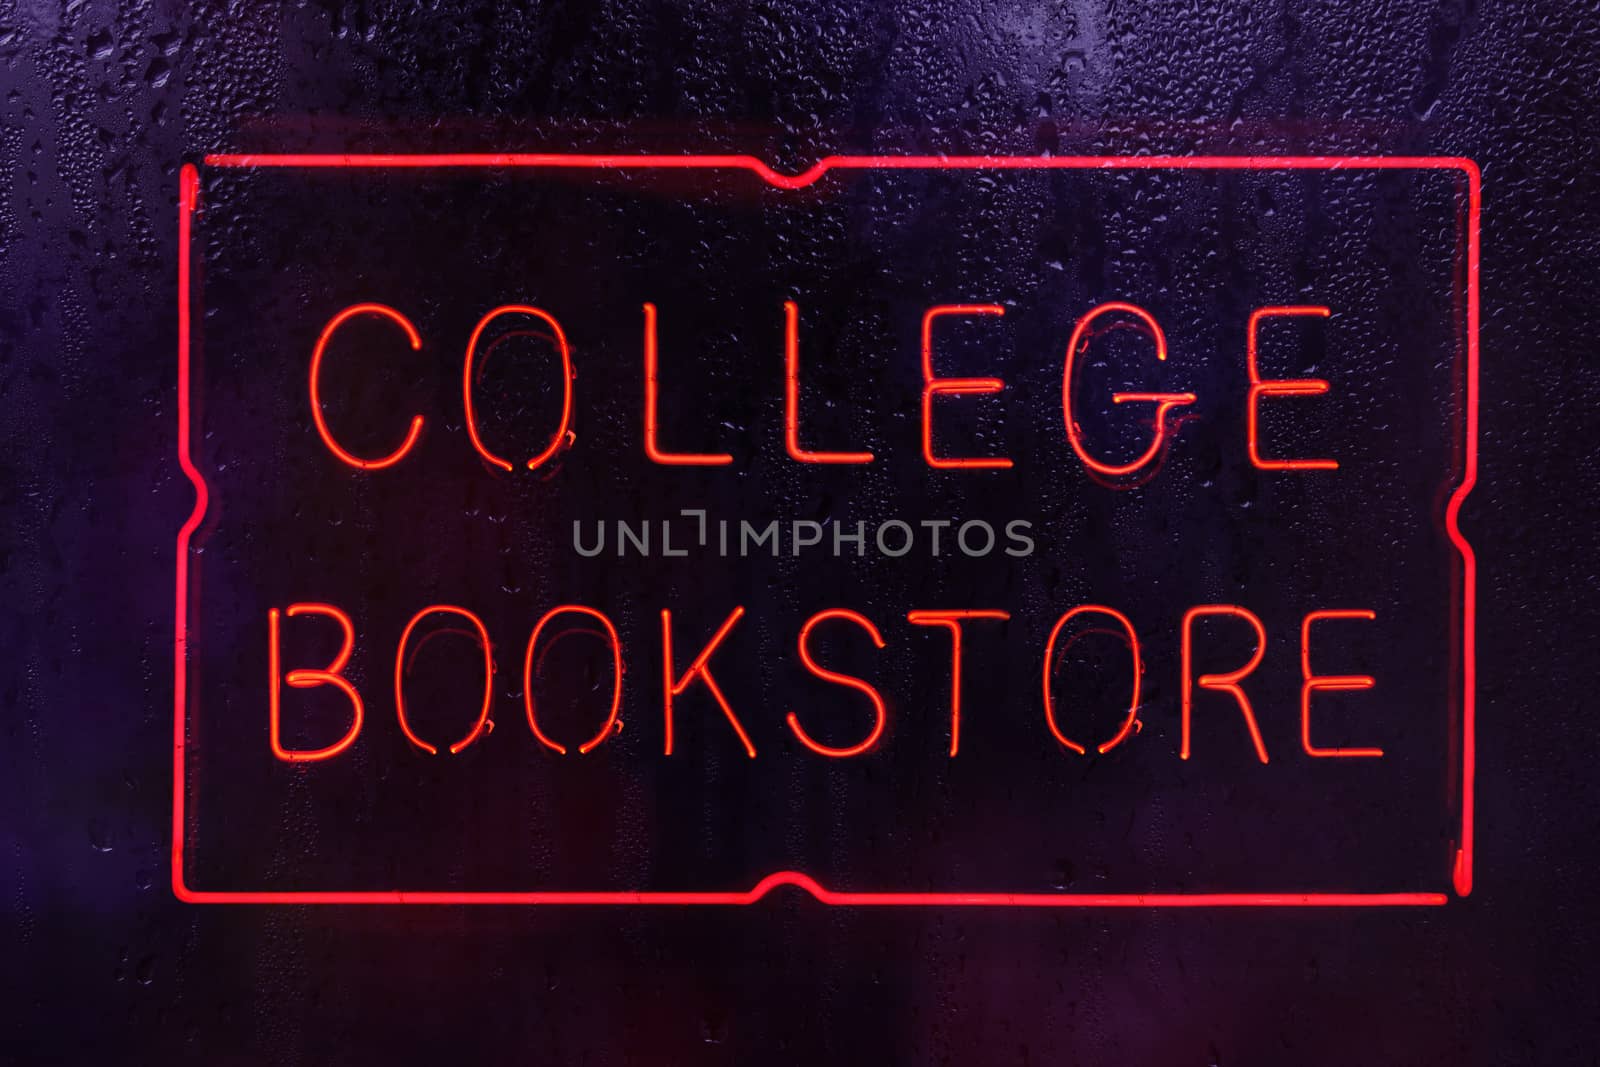 Neon College Bookstore Sign by Marti157900